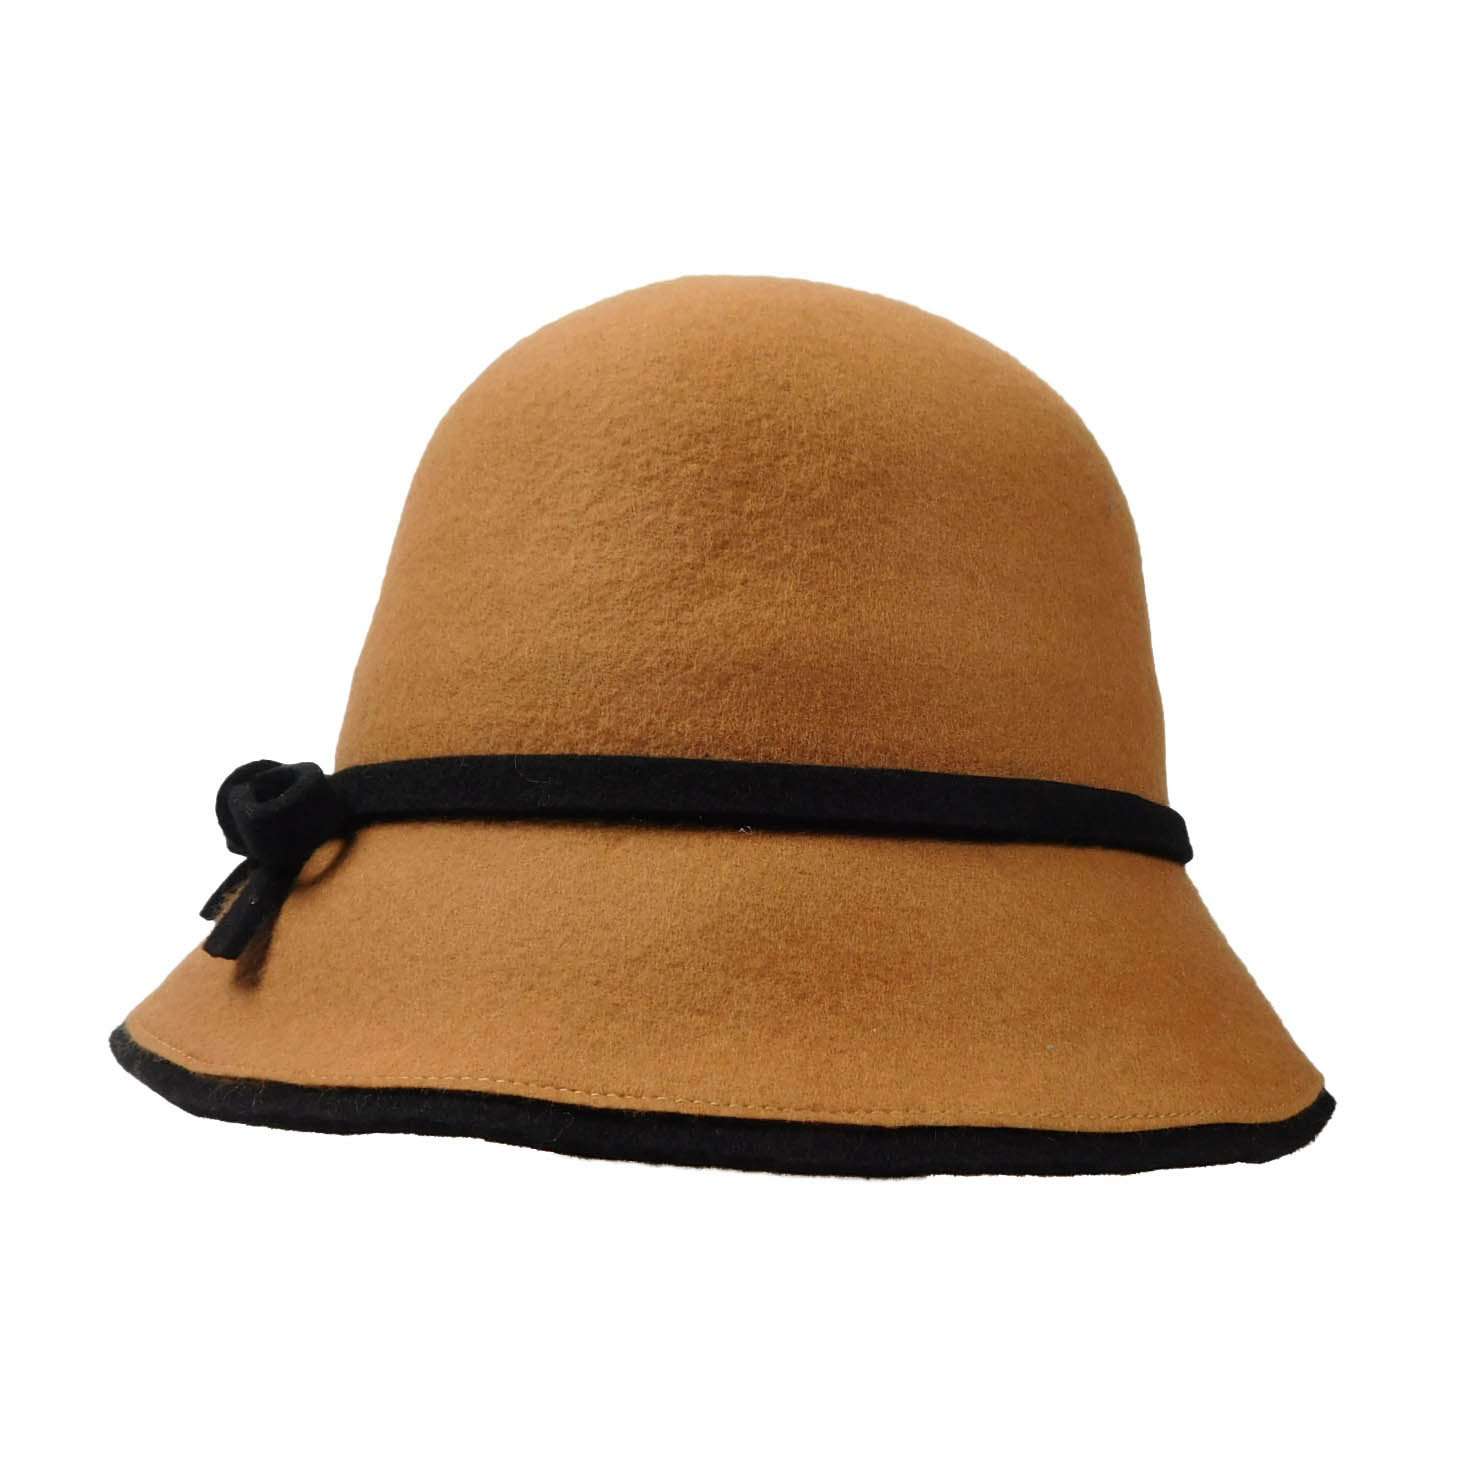 Wool Felt Cloche/Bucket Hat Cloche Jeanne Simmons    